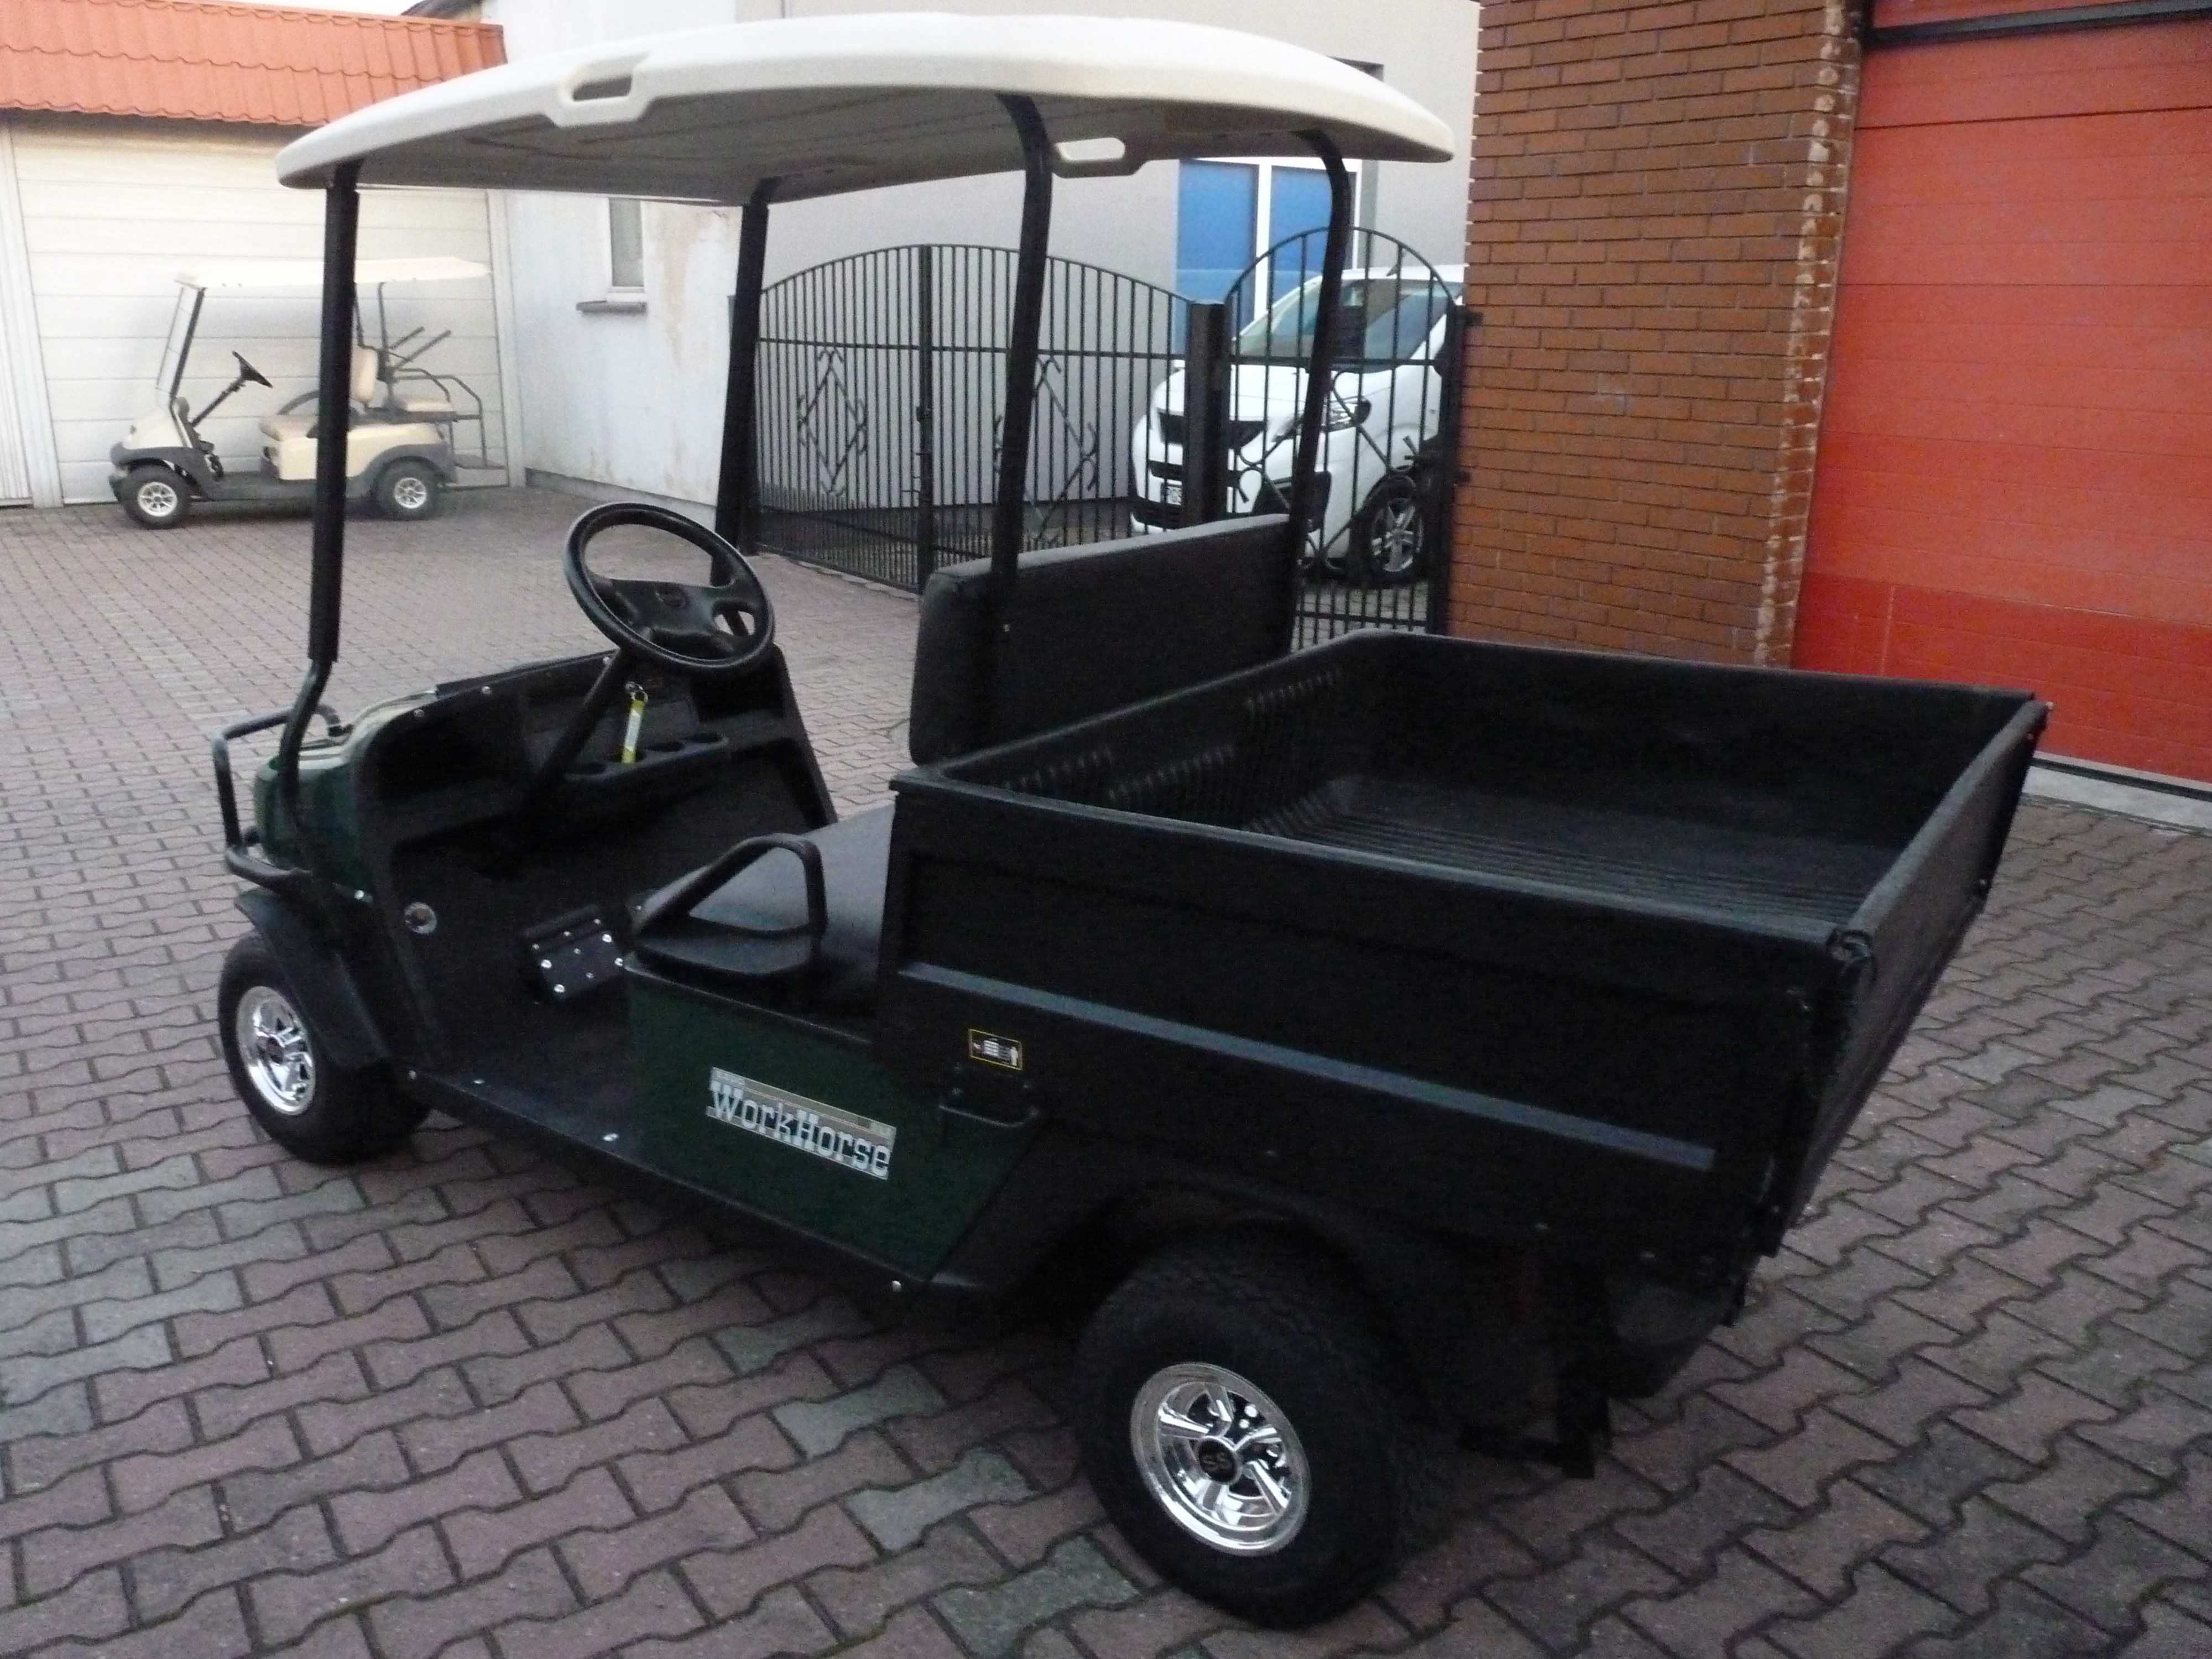 Pojazd elektryczny, wózek golfowy Ezgo typu Melex